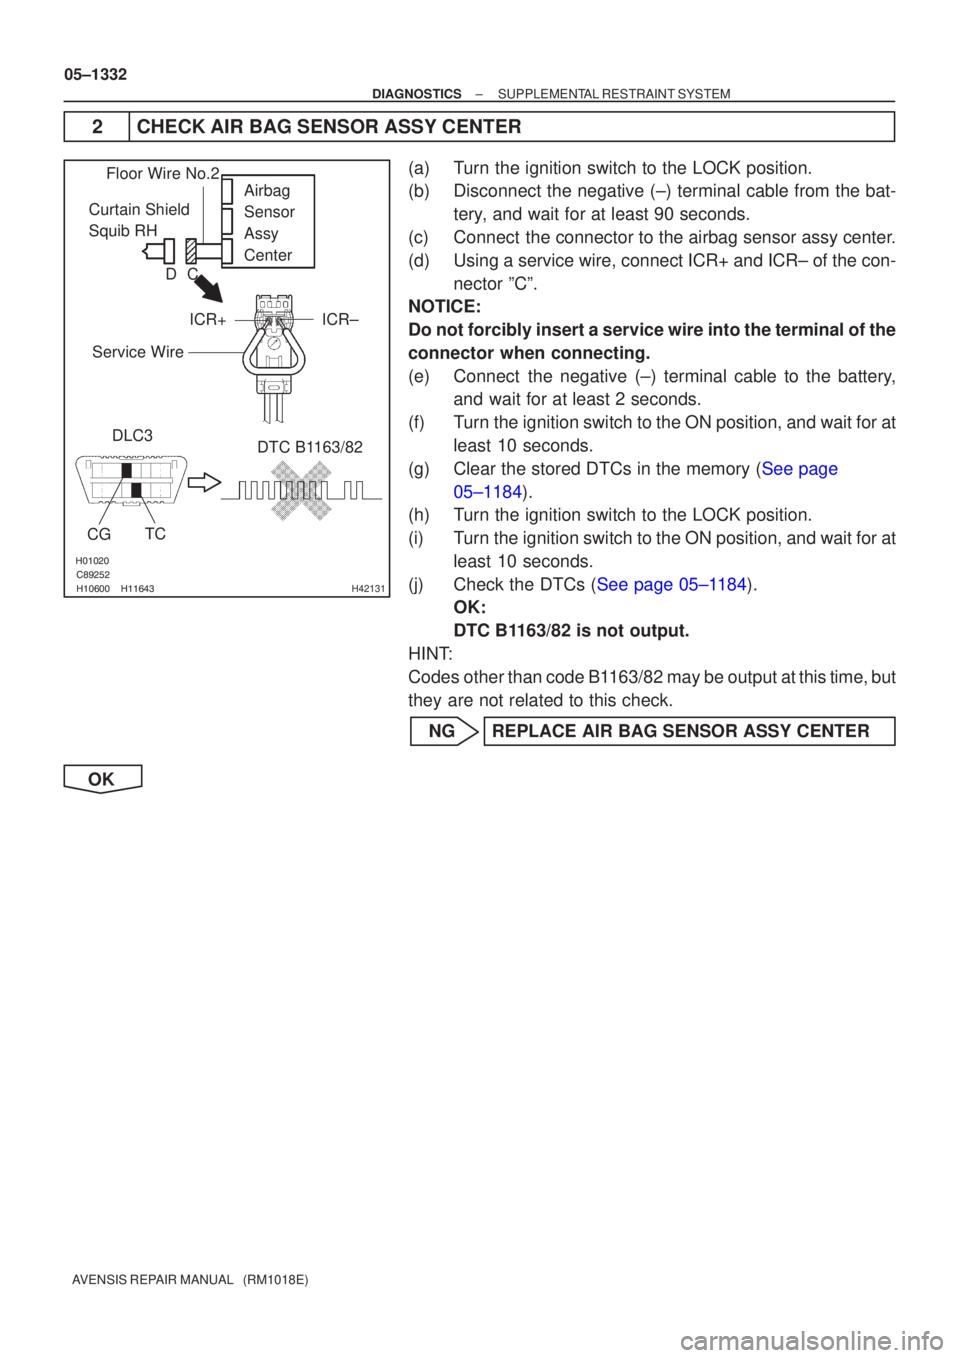 TOYOTA AVENSIS 2005  Service Repair Manual 
\b	
H42131
Curtain Shield 
Squib RH Airbag
Sensor
Assy 
Center
DLC3
CG TC DTC B1163/82
Floor Wire No.2
Service Wire
ICR+ ICR±
C
D
05±1332
±
DIAGNOSTICS SUPPLEMENTAL RESTRAINT 